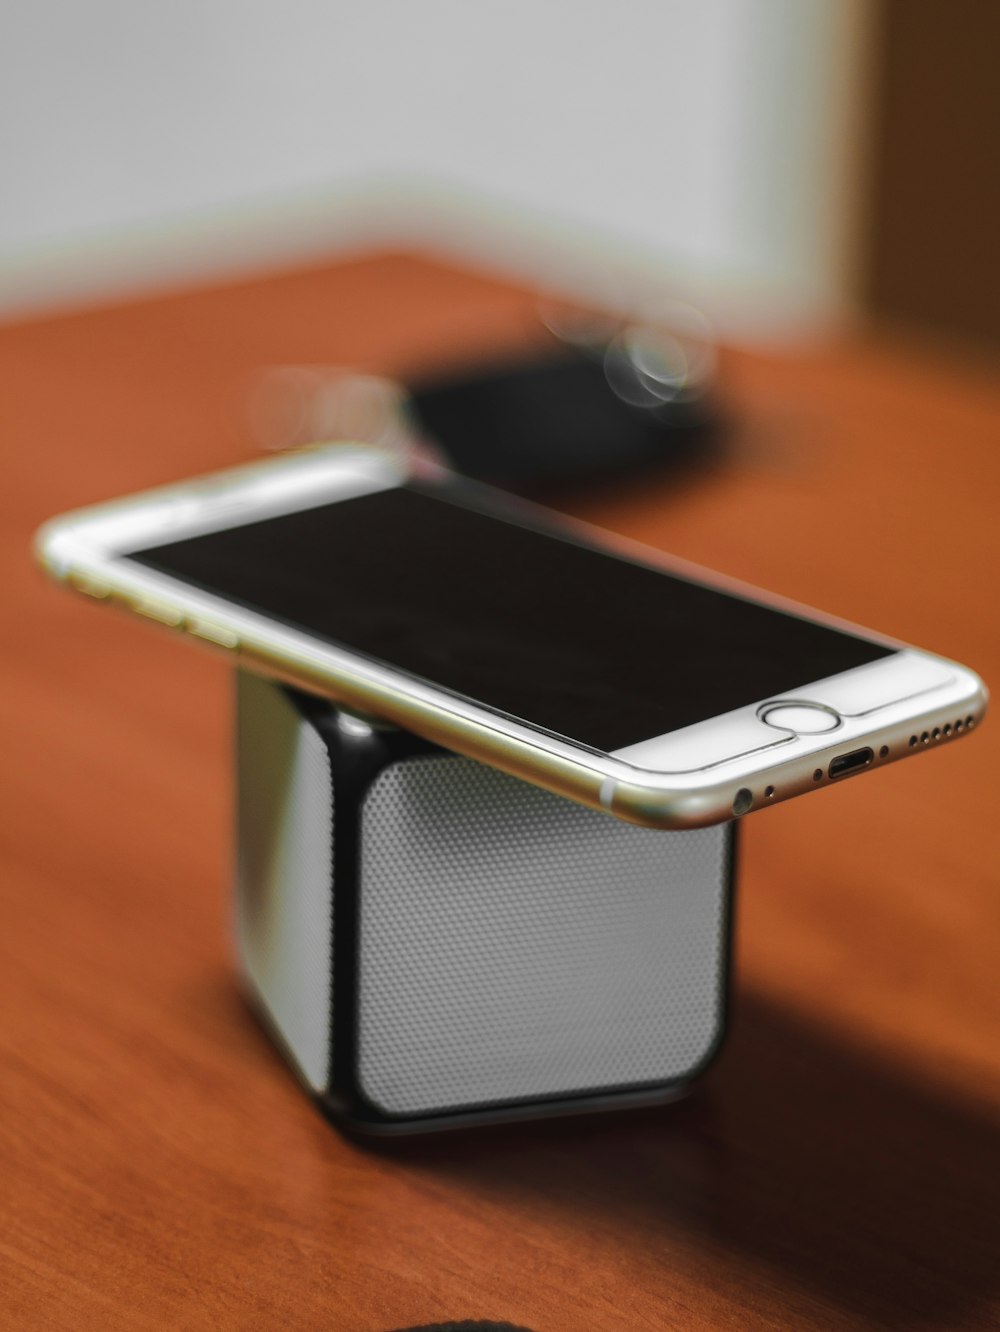 iPhone 6 dourado em cima do alto-falante portátil Bluetooth